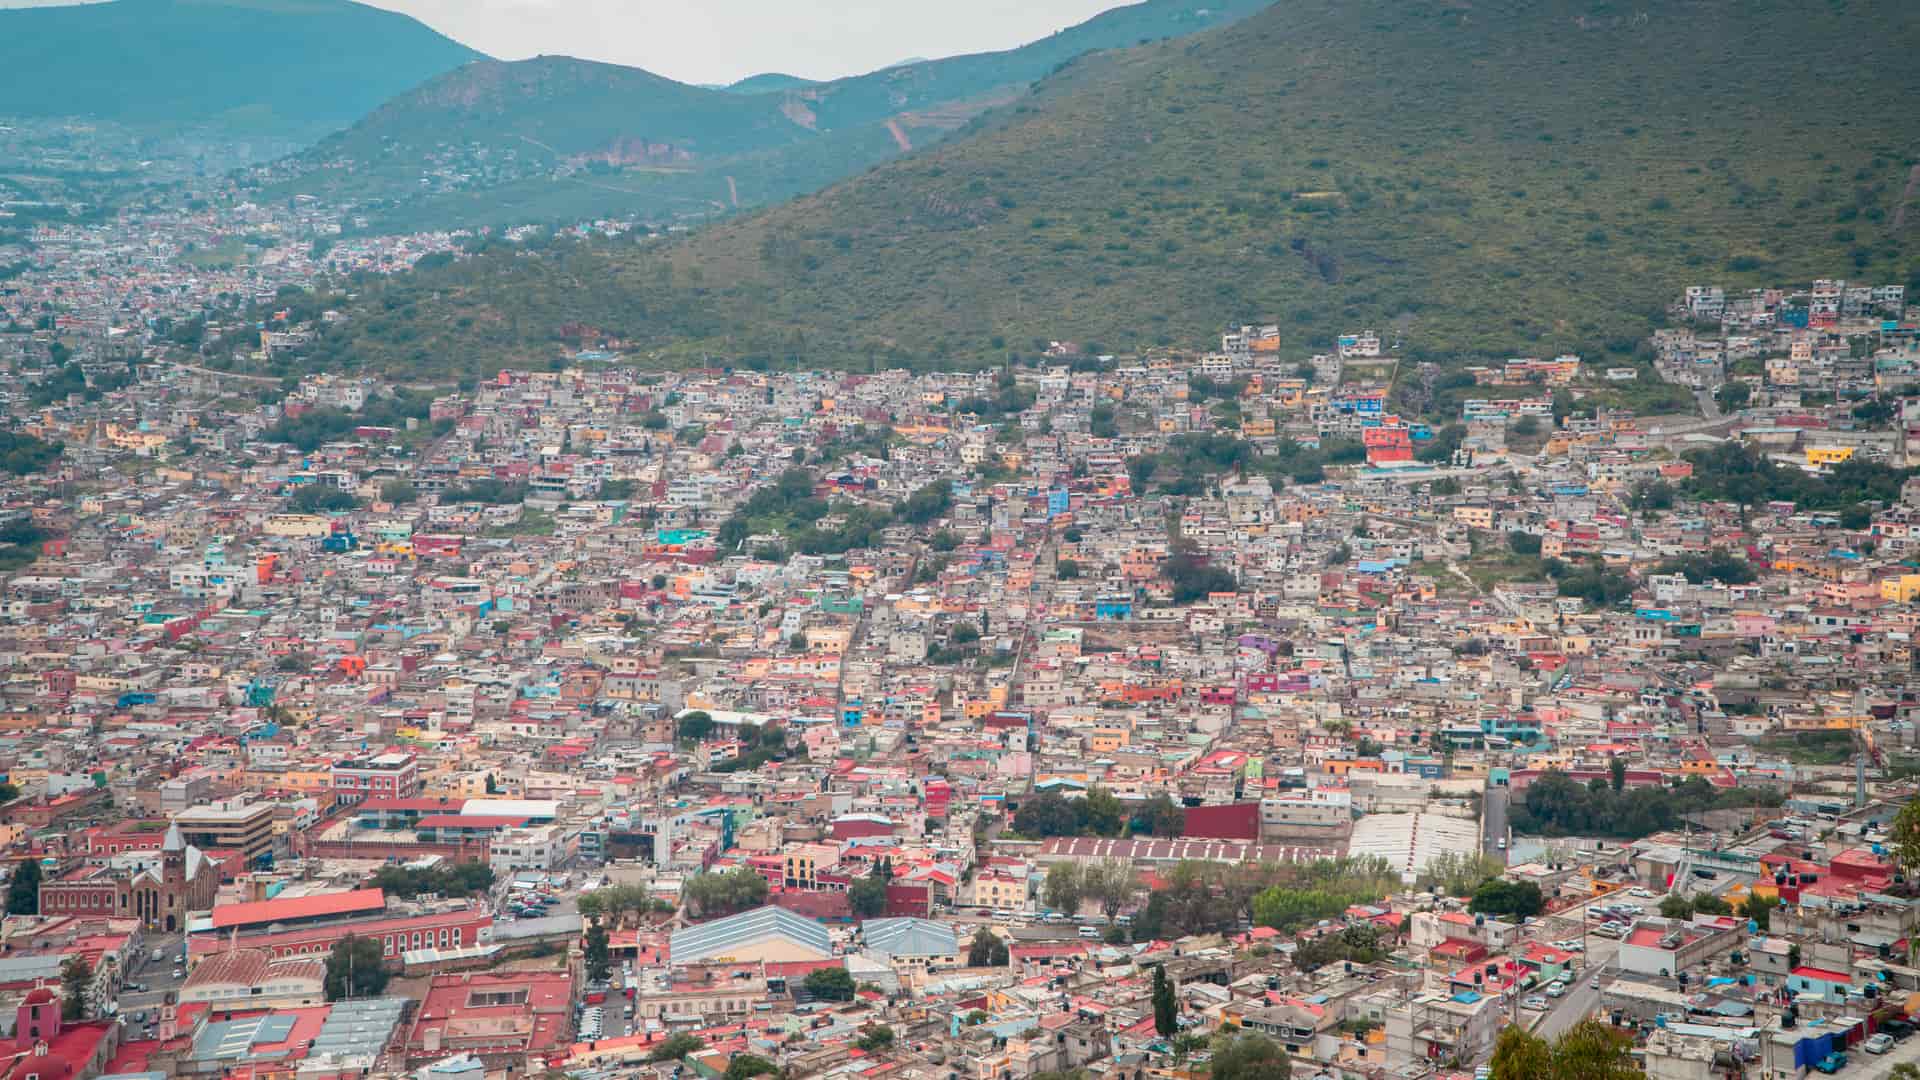 Vista de pajaro de la ciudad de Pachuca en Mexico donde se pueden encontrar sucursales de sky